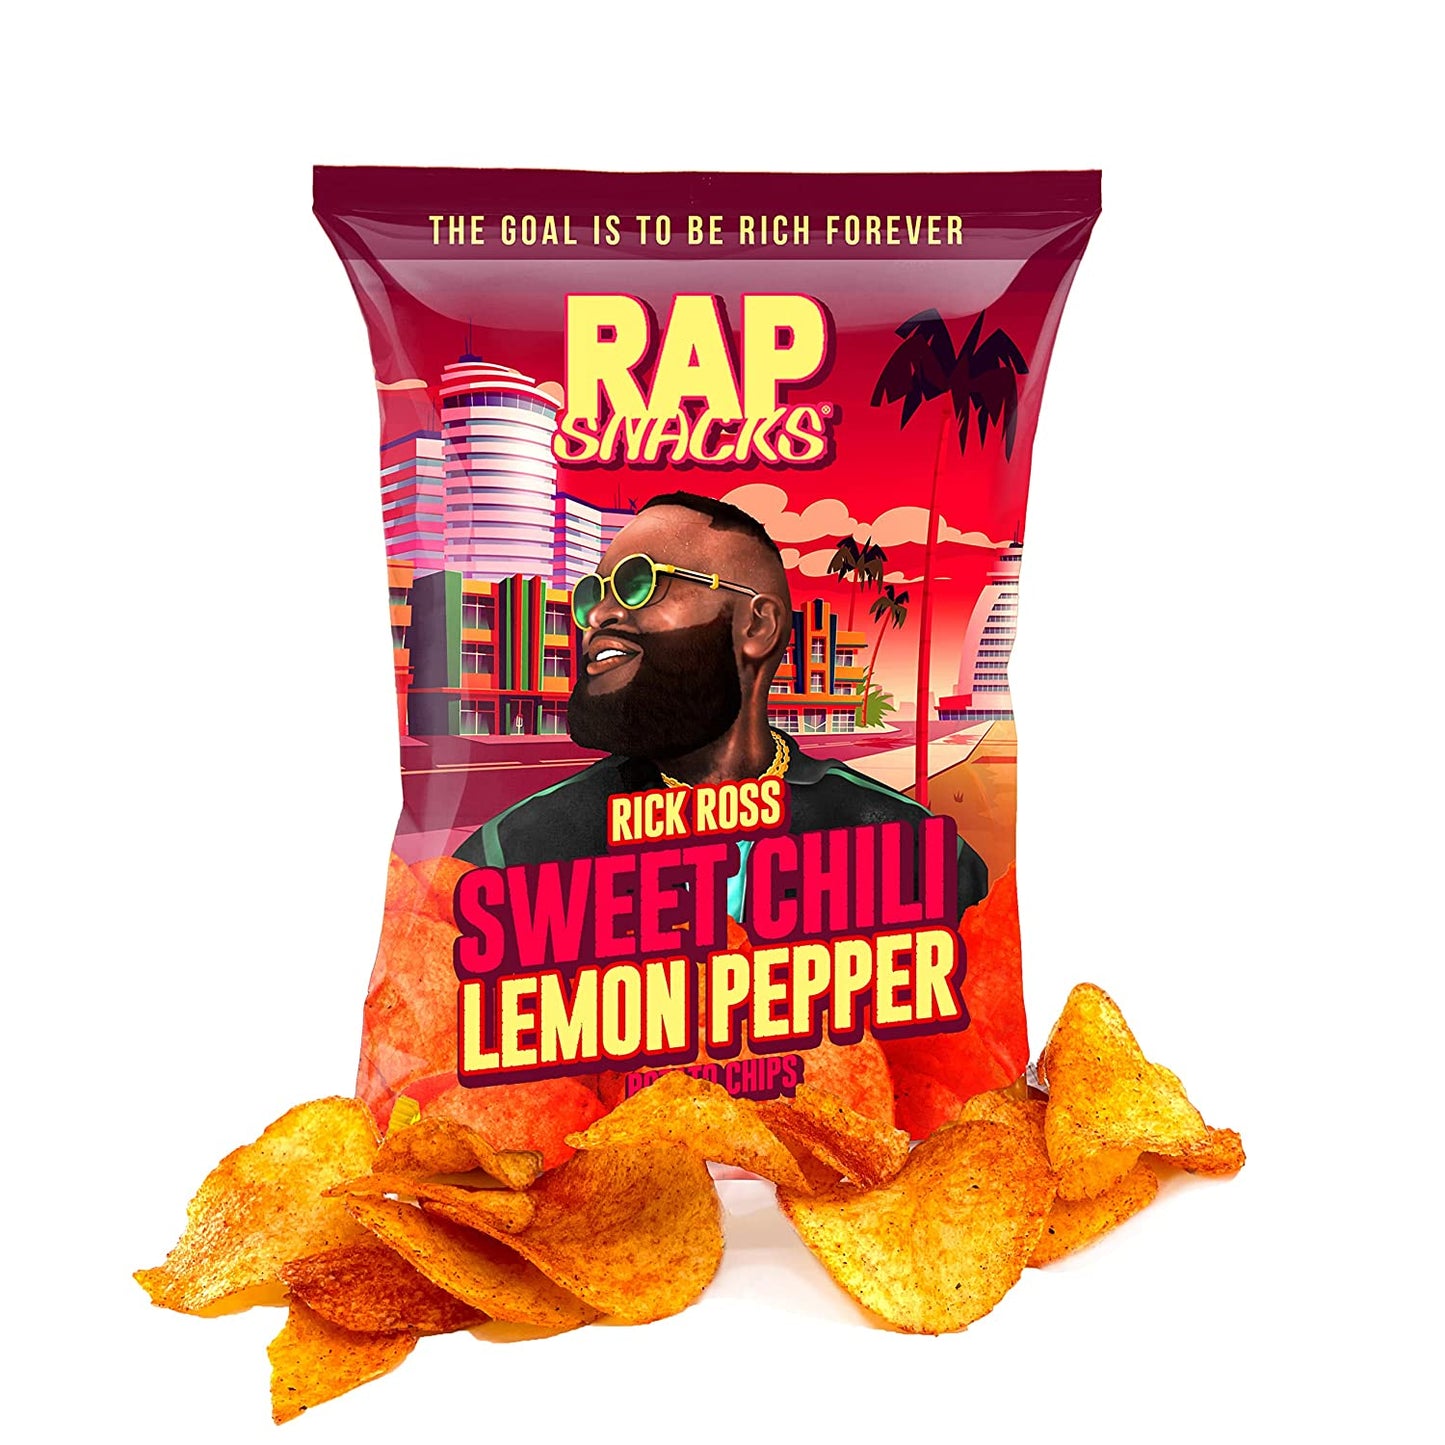 Rap Snacks | Rick Ross |  Sweet Chili Lemon Pepper Chips - 2.5oz - SUPER RARE